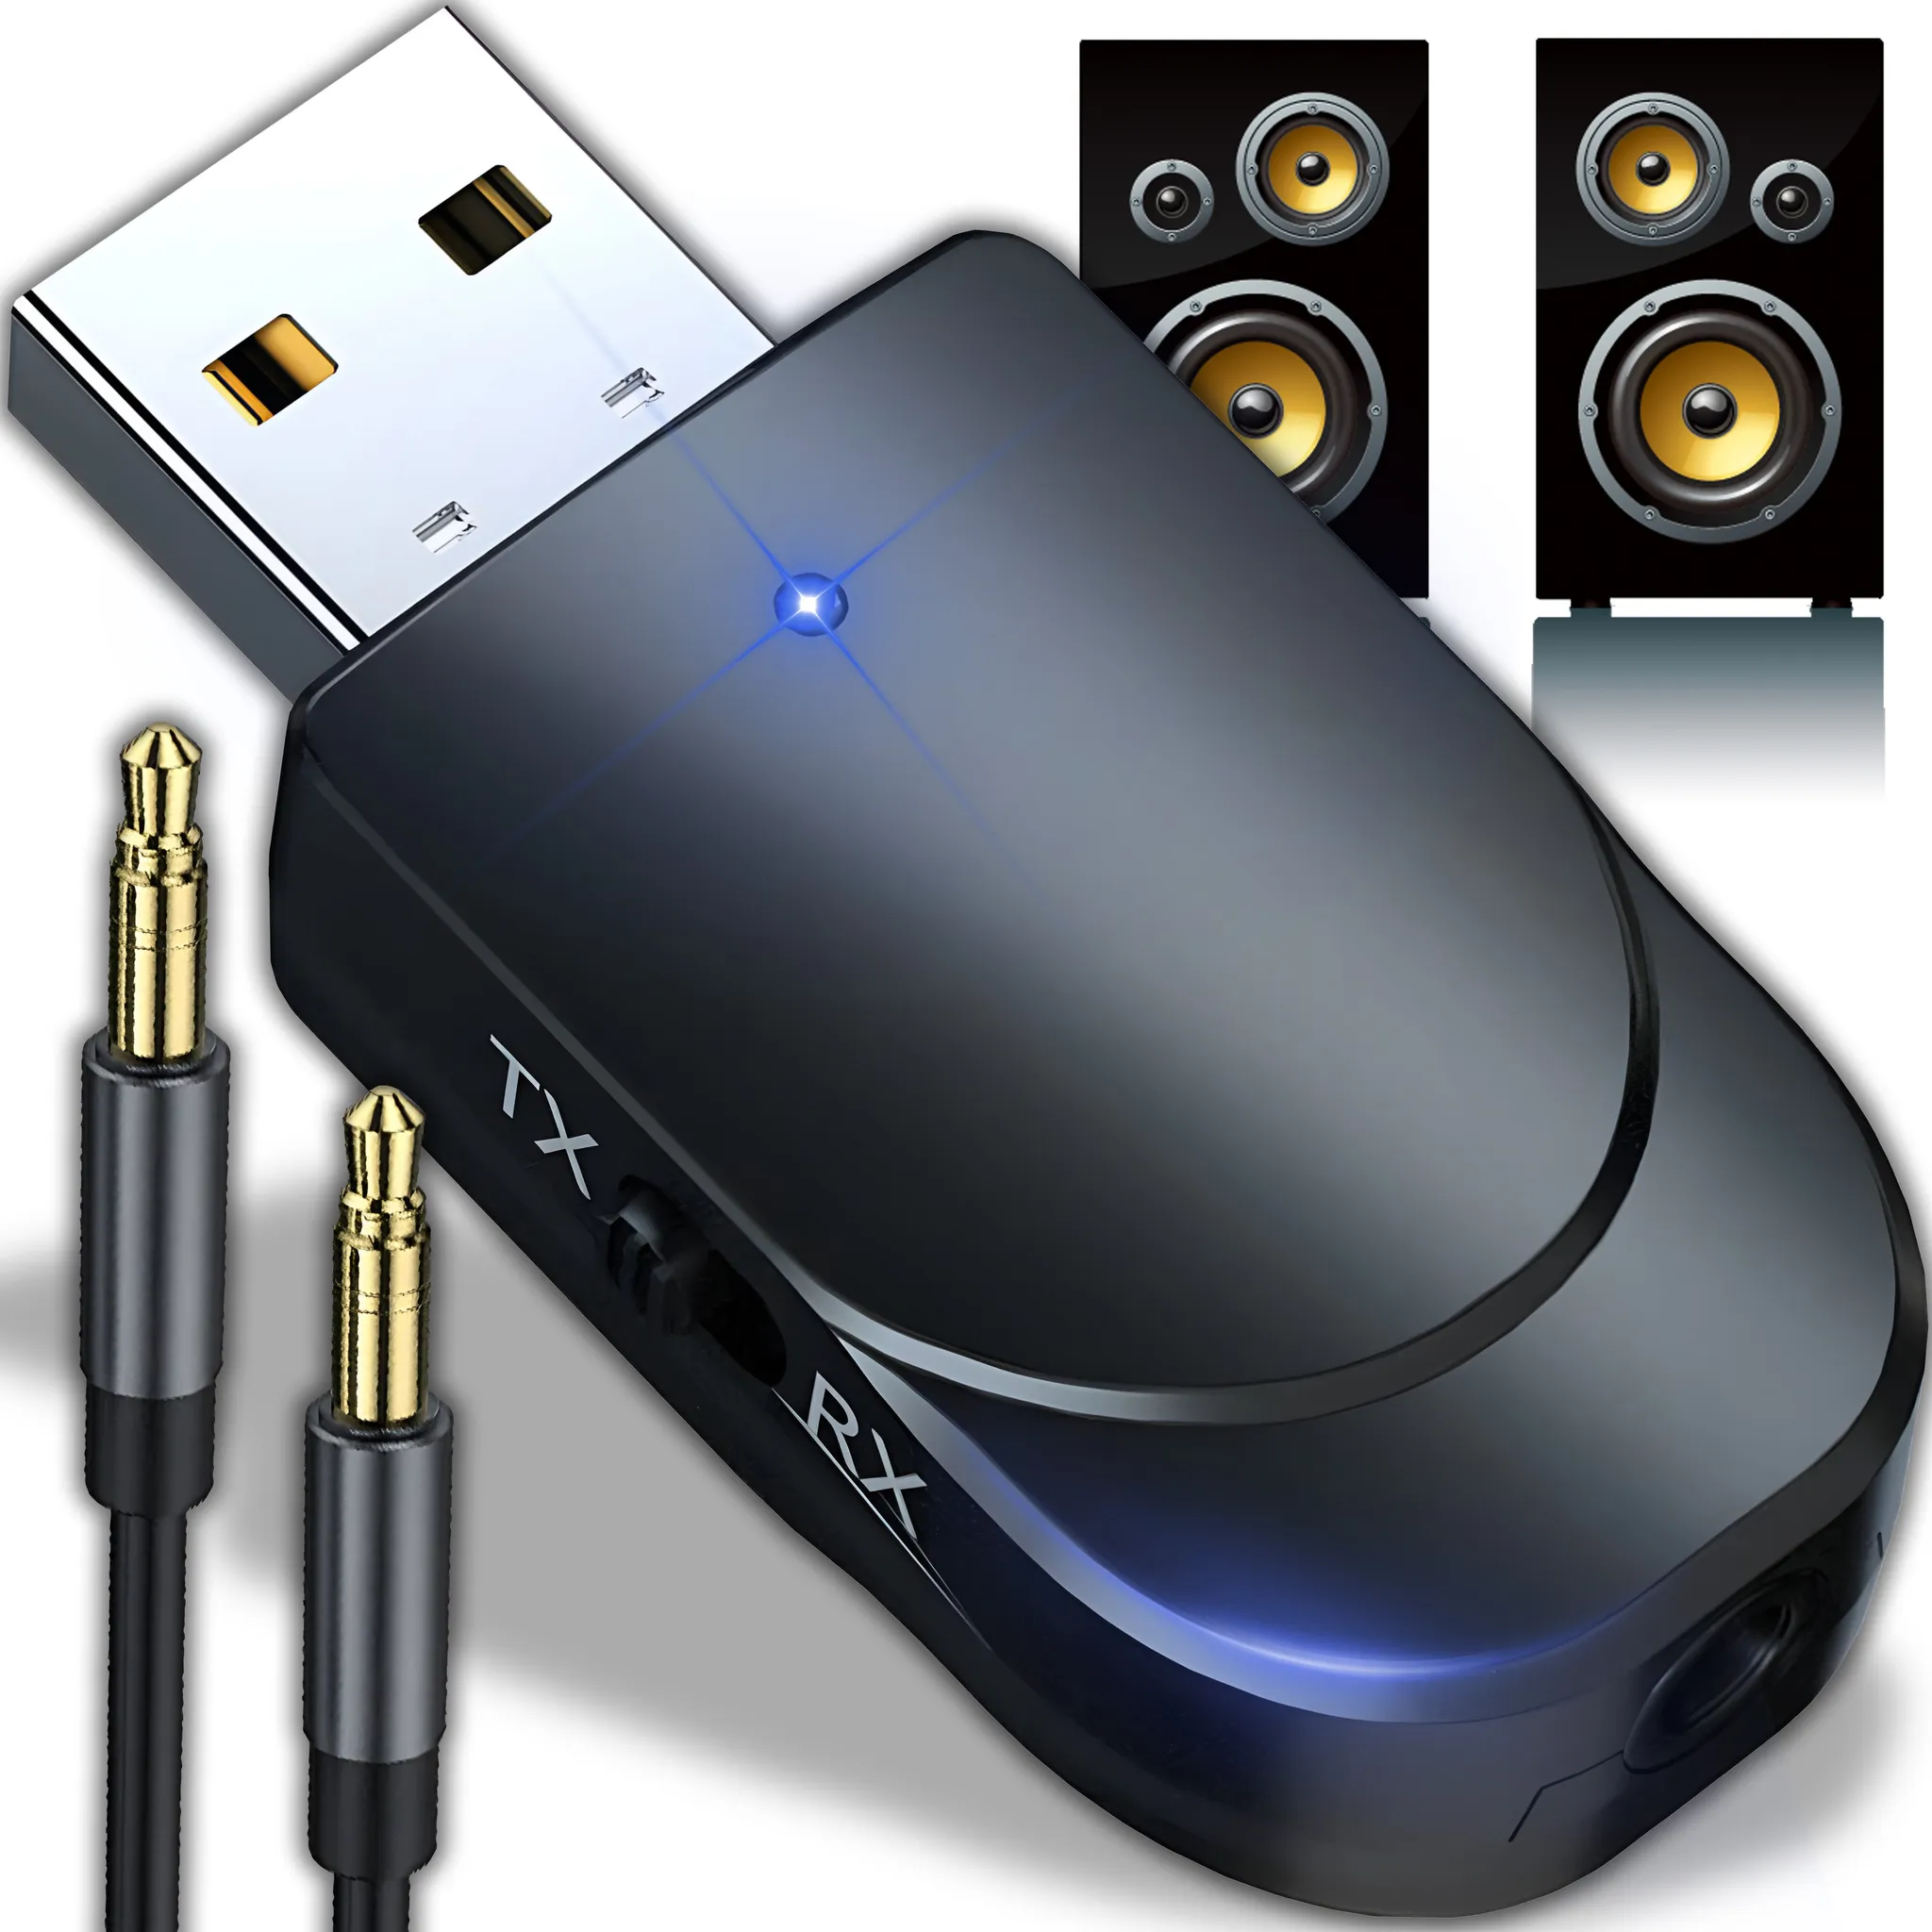 Bluetooth-Audioempfänger/ Freisprecheinrichtung 3,5 mm Klinke